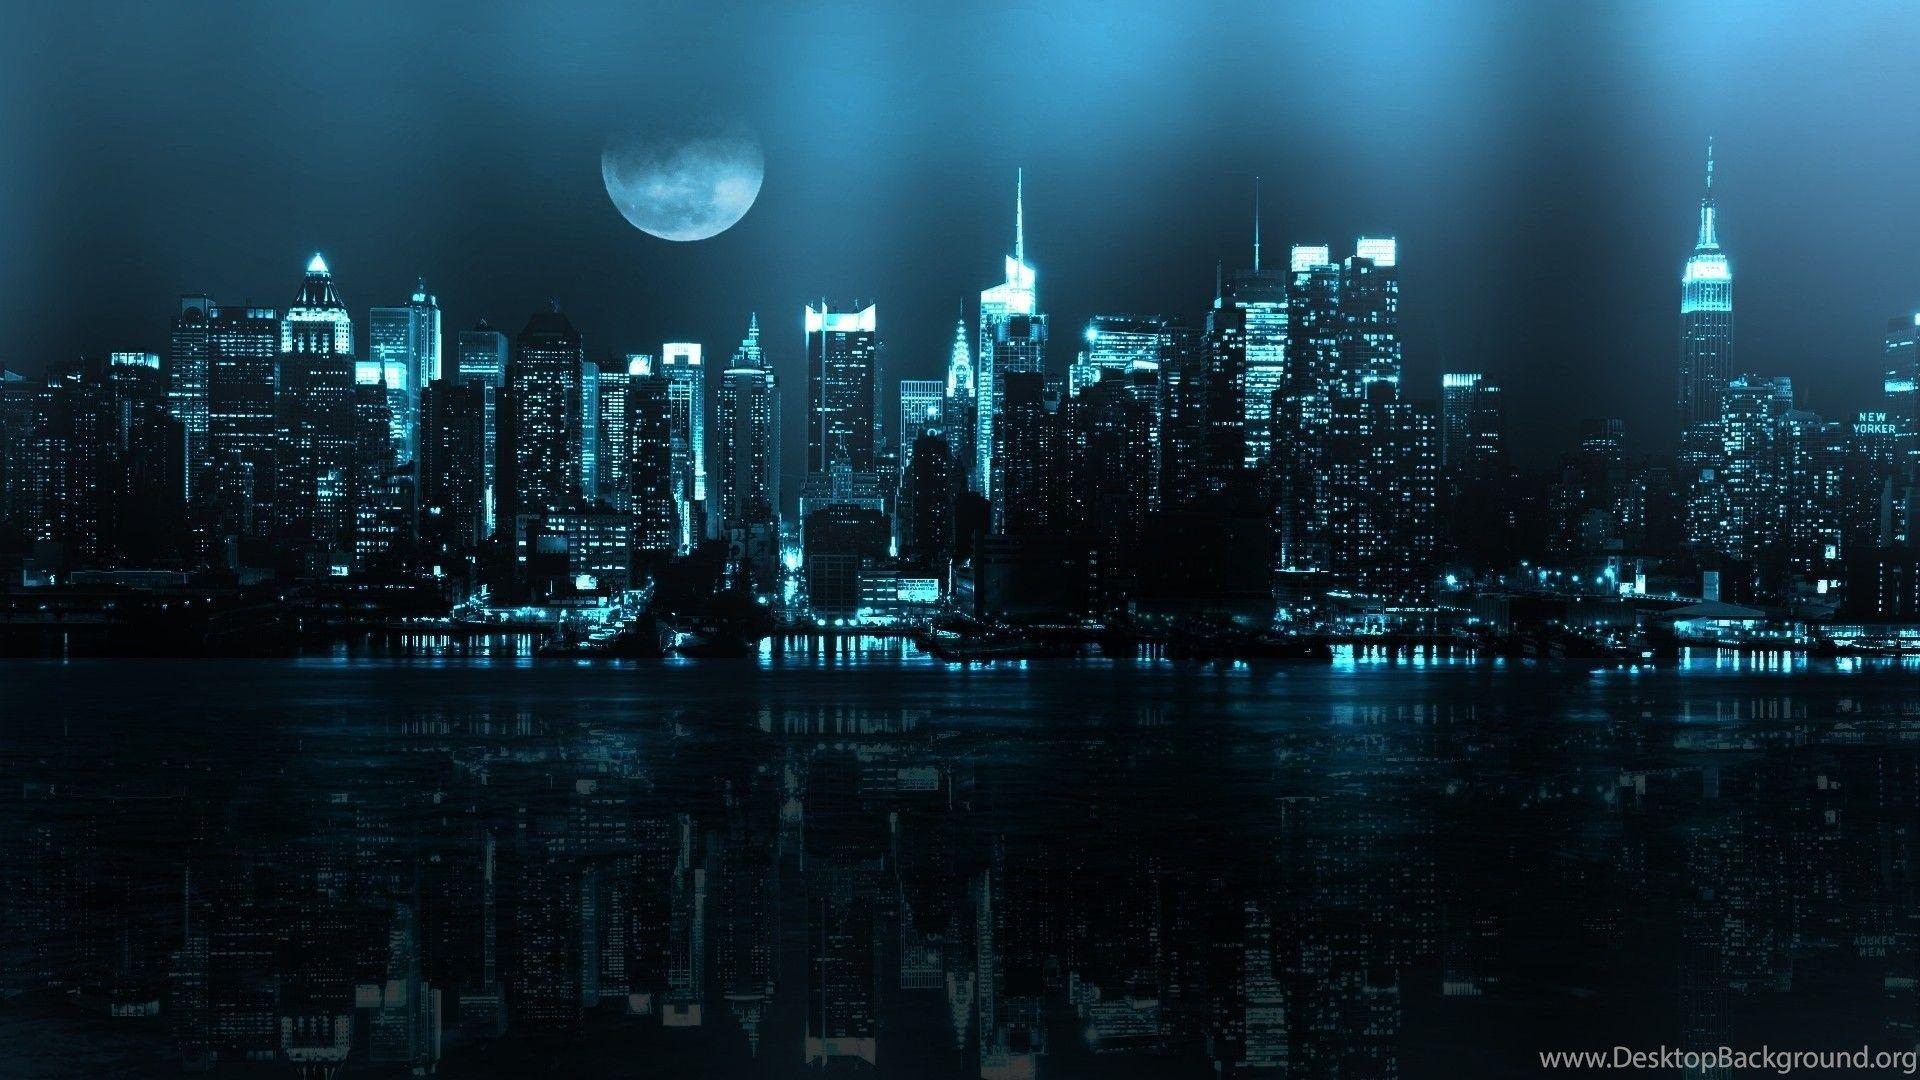 HD Dark City Wallpaper là lựa chọn tốt nhất nếu bạn muốn thưởng thức hình nền sắc nét và sống động hơn. Cảm nhận được mọi chi tiết, từ các tòa nhà đến những đường phố nhỏ xinh trong bức tranh đêm u tối.